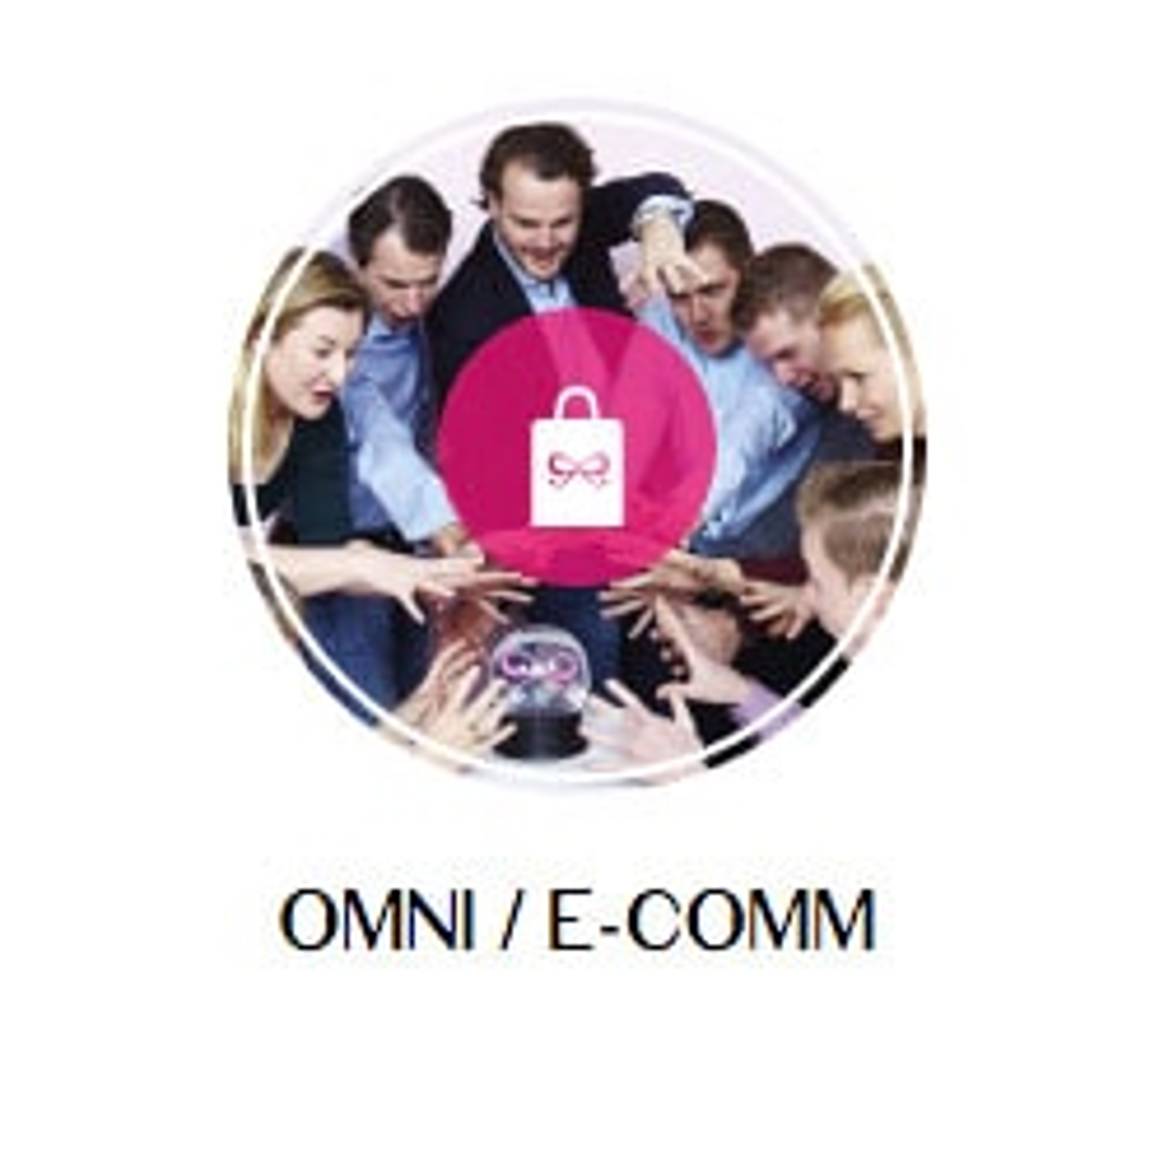 Omni / E-comm